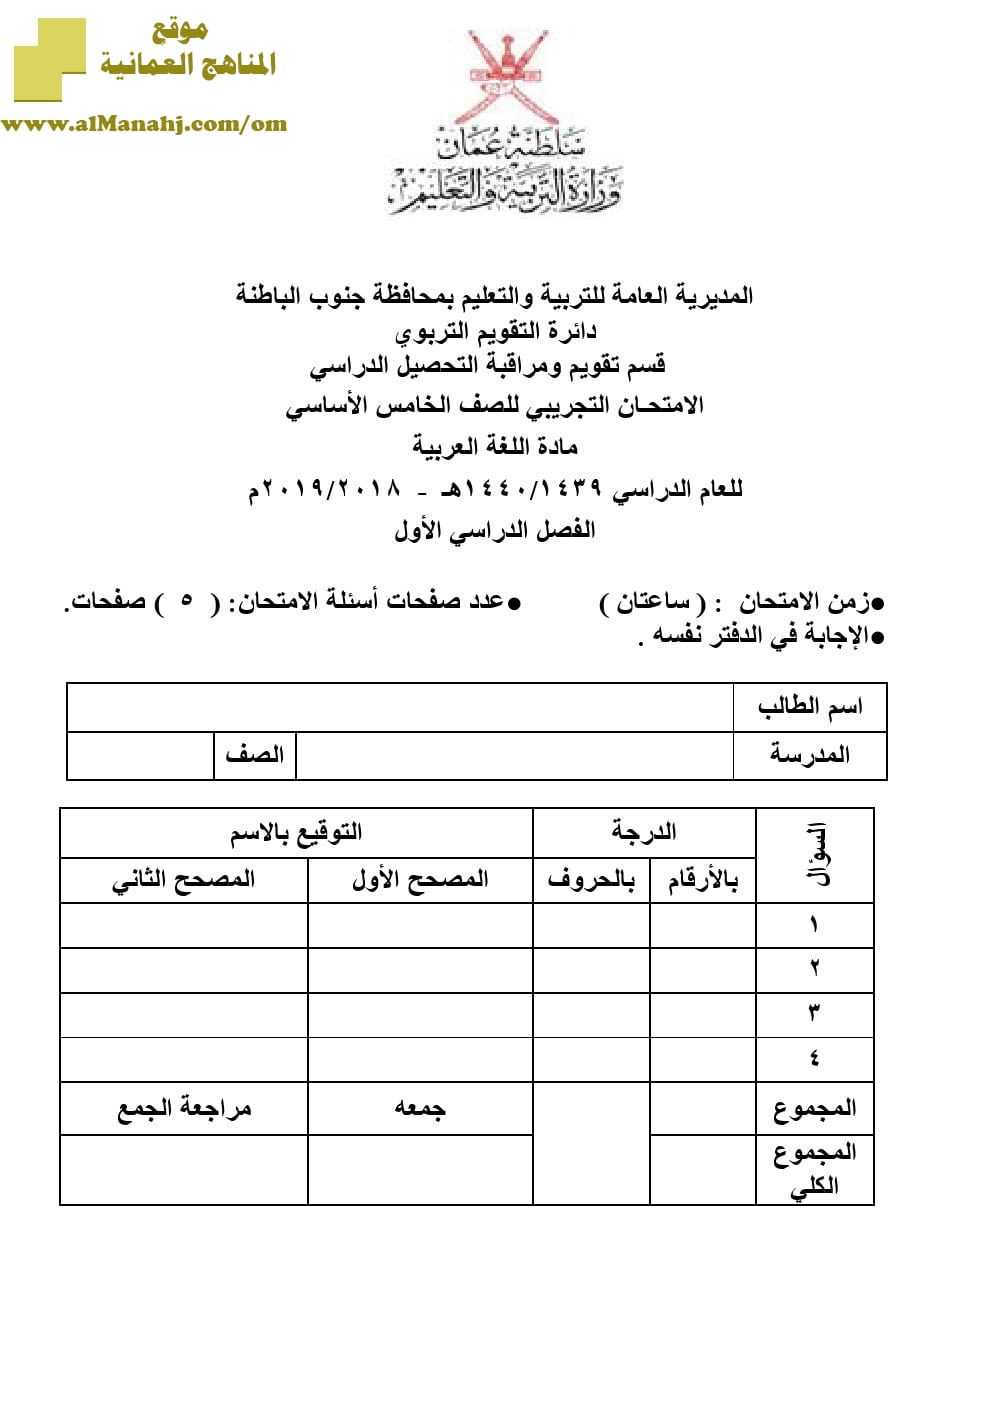 أسئلة وإجابة الامتحان التجريبي للفصل الدراسي الأول الدور الأول والثاني ~ (لغة عربية) الخامس